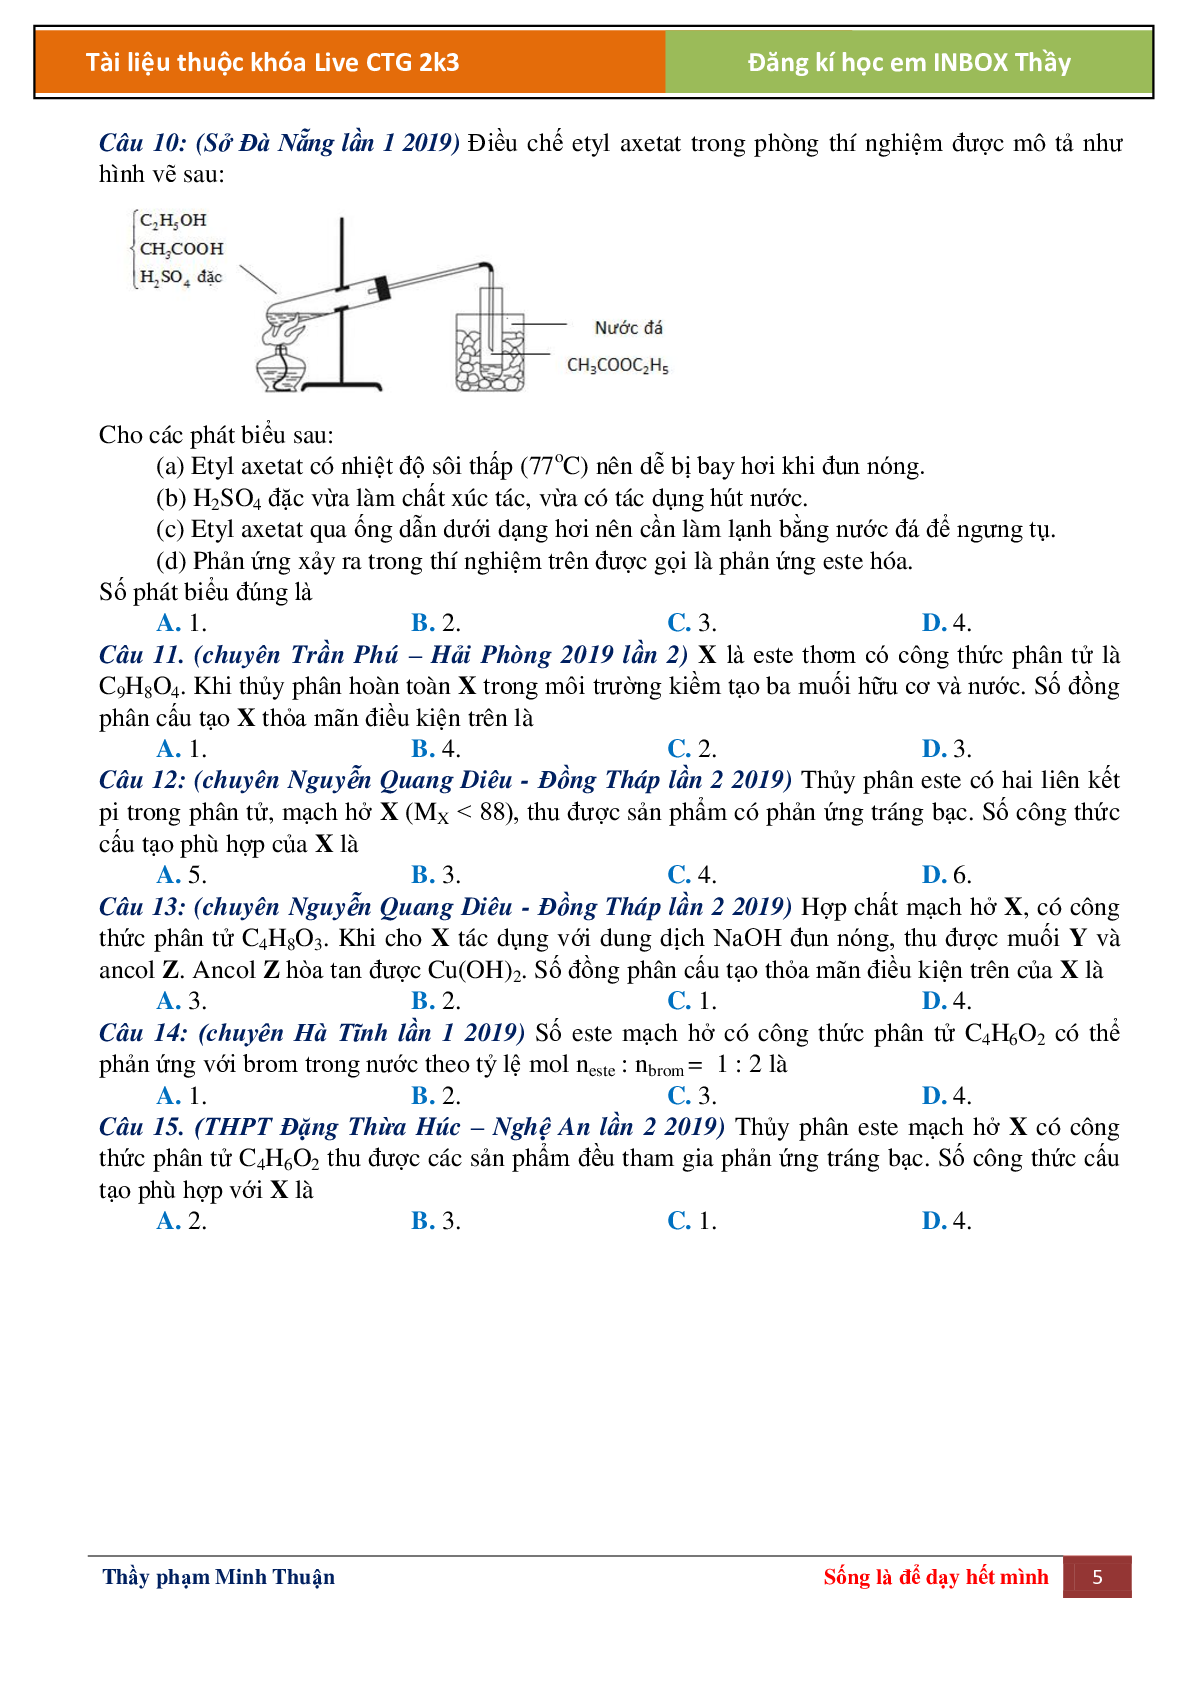 Lý thuyết Este chọn, đếm, tìm chất môn hóa học lớp 12 (trang 5)